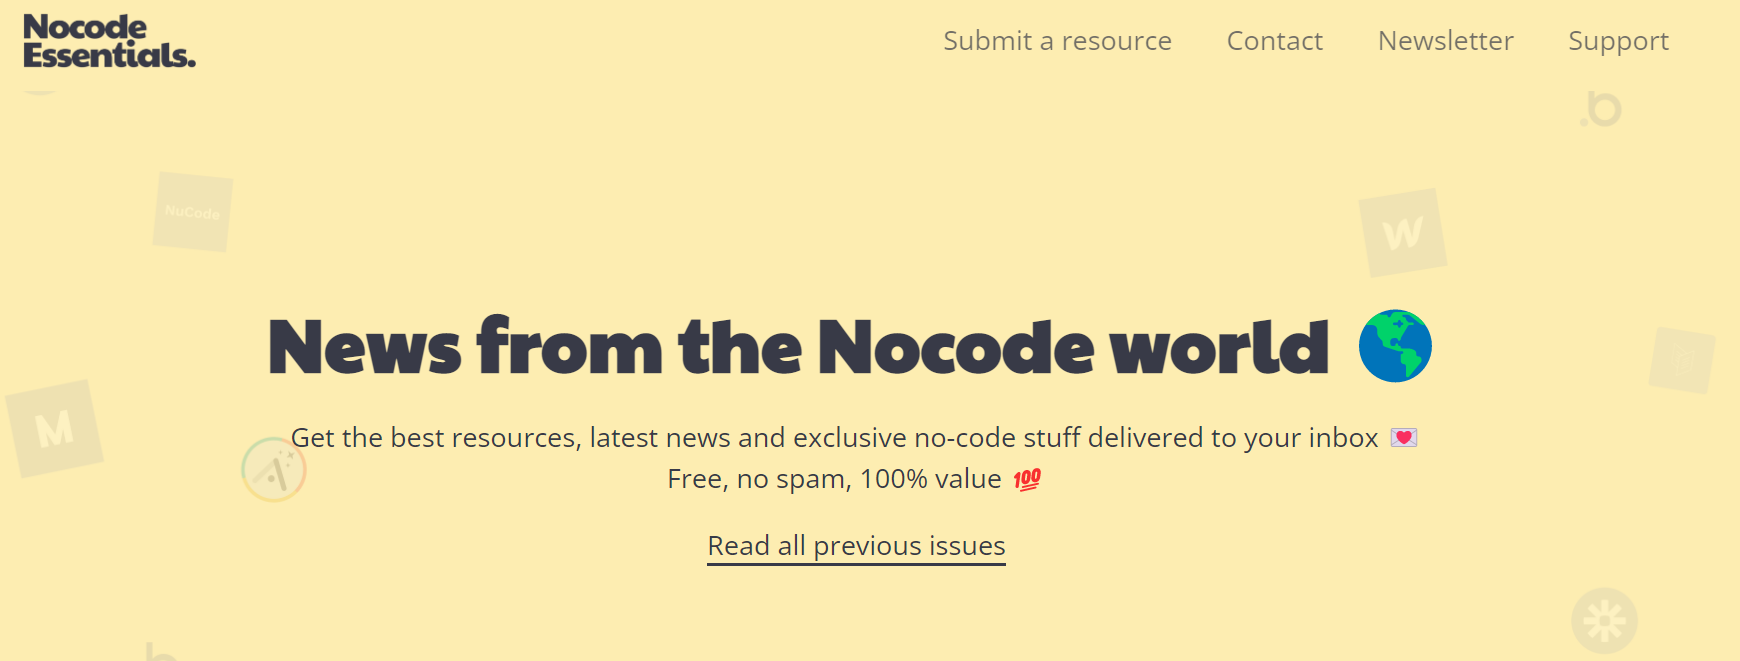 Nocode Essentials Newsletter